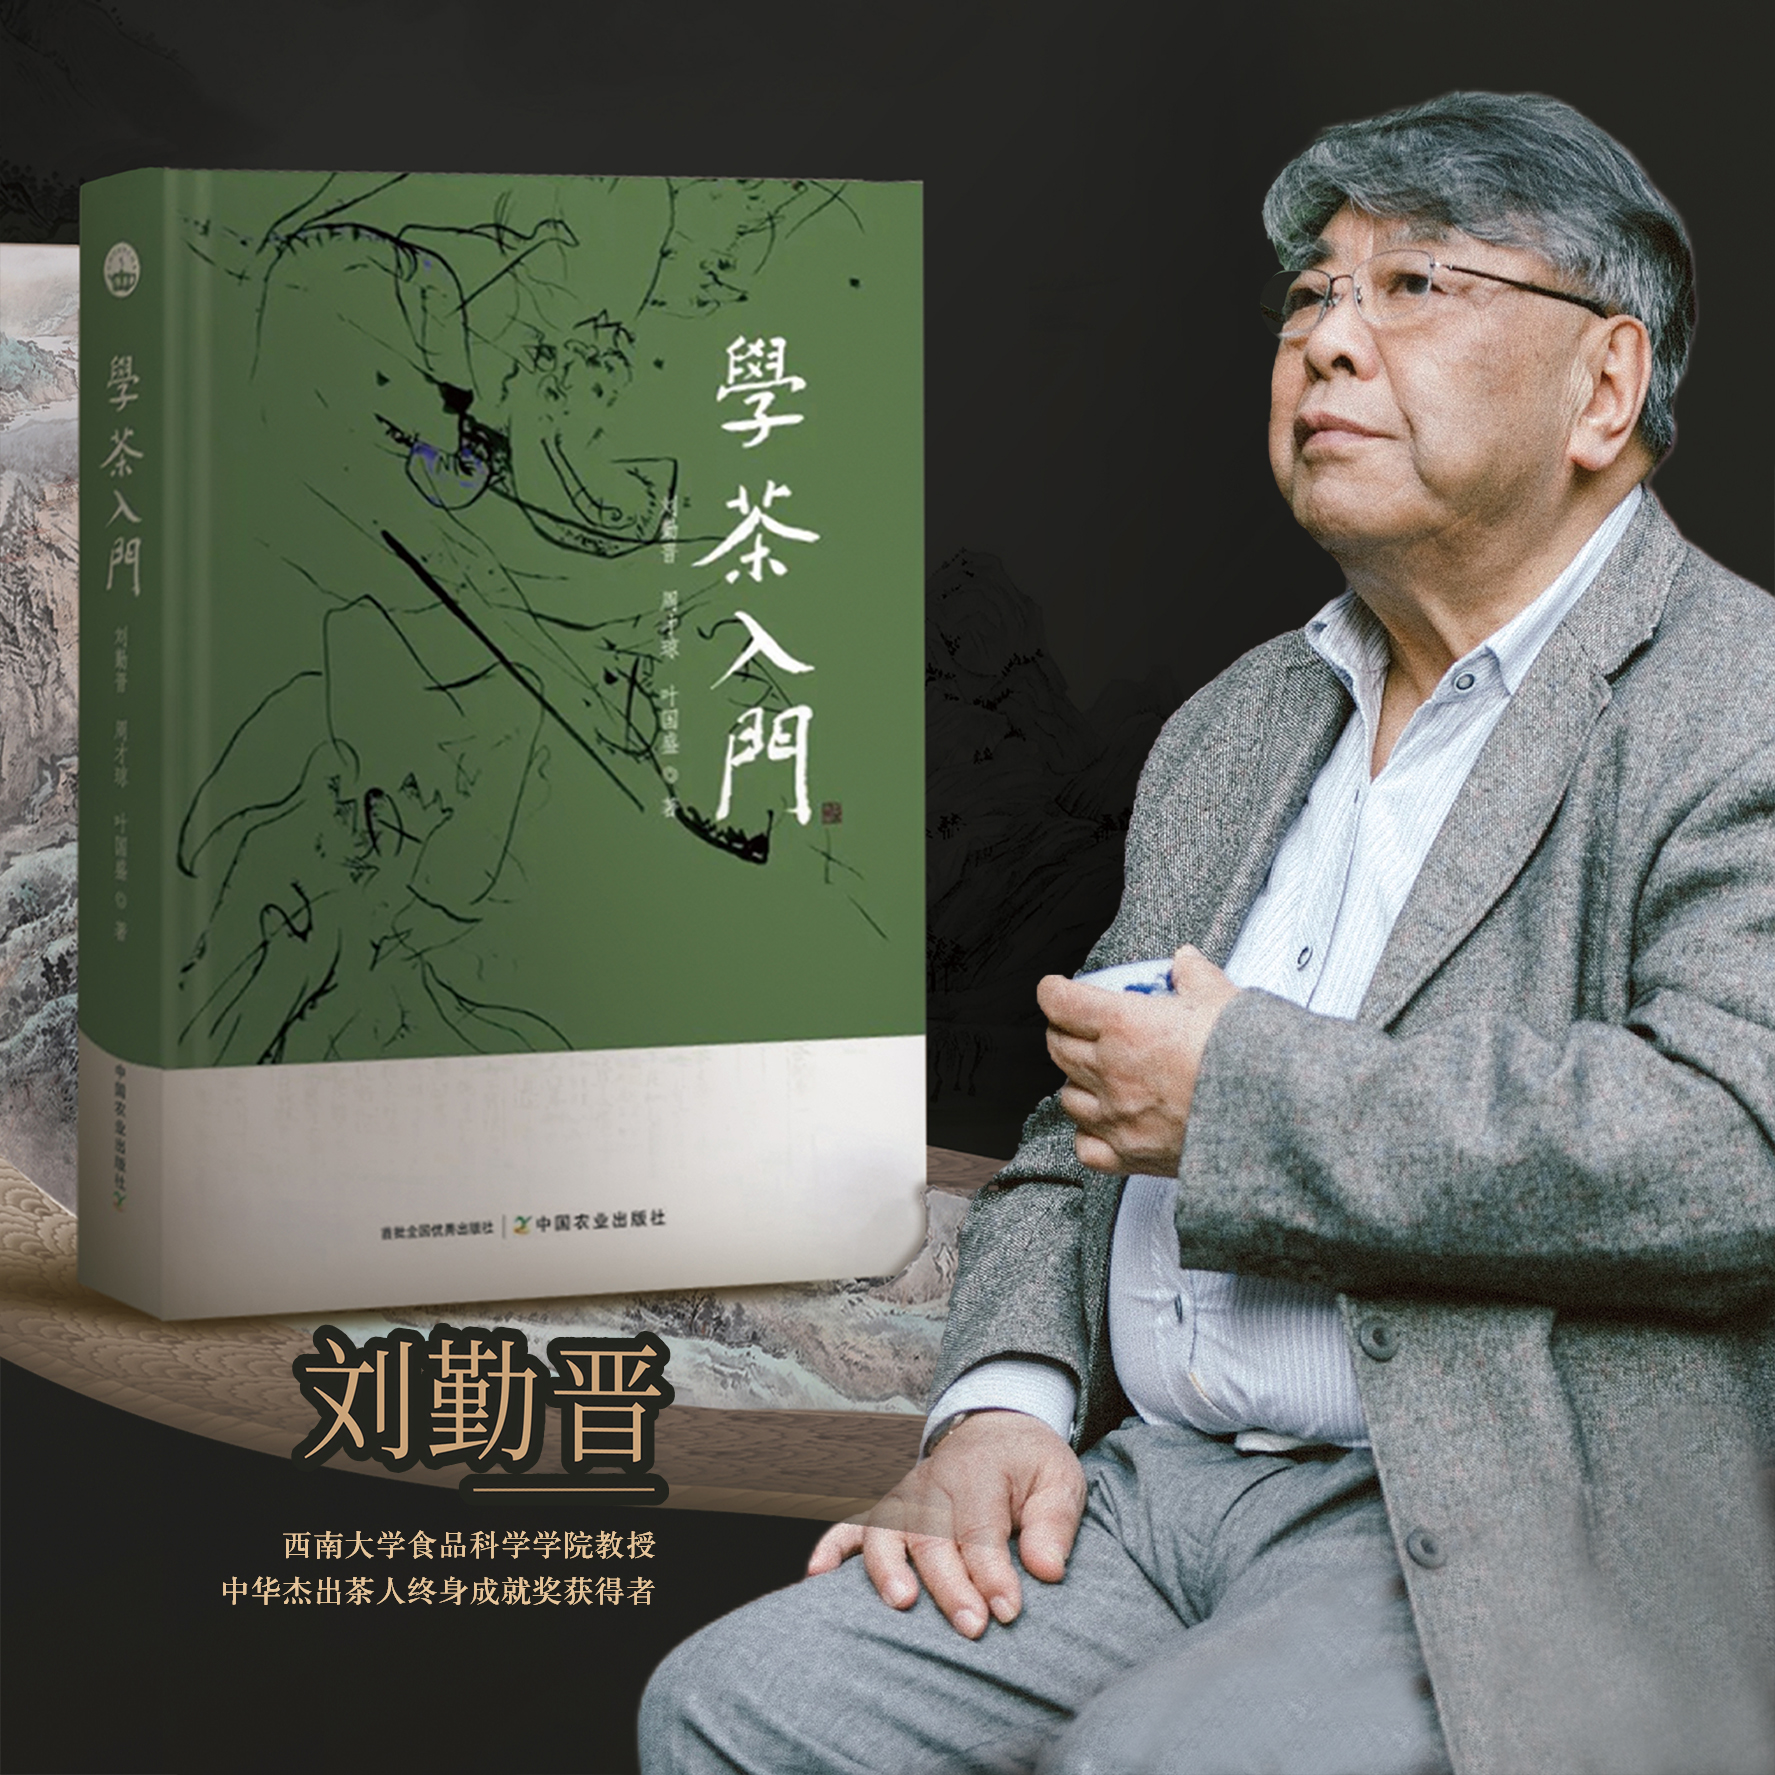 学茶入门 刘勤晋,周才琼,叶国盛 茶文化 茶产业 茶道 30320